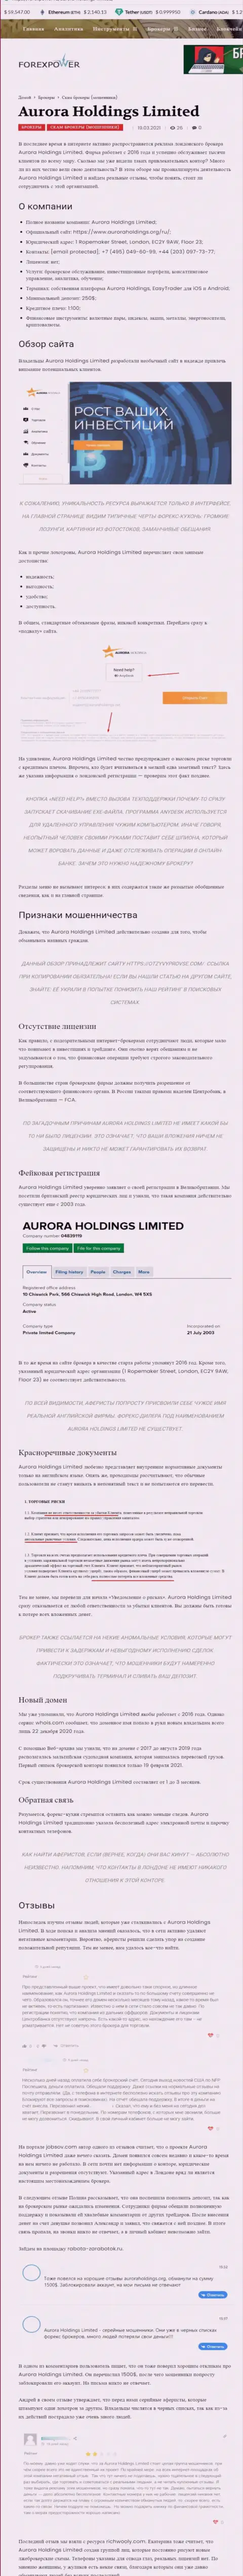 AuroraHoldings - это интернет-обманщики, которых стоит обходить стороной (обзор мошеннических комбинаций)